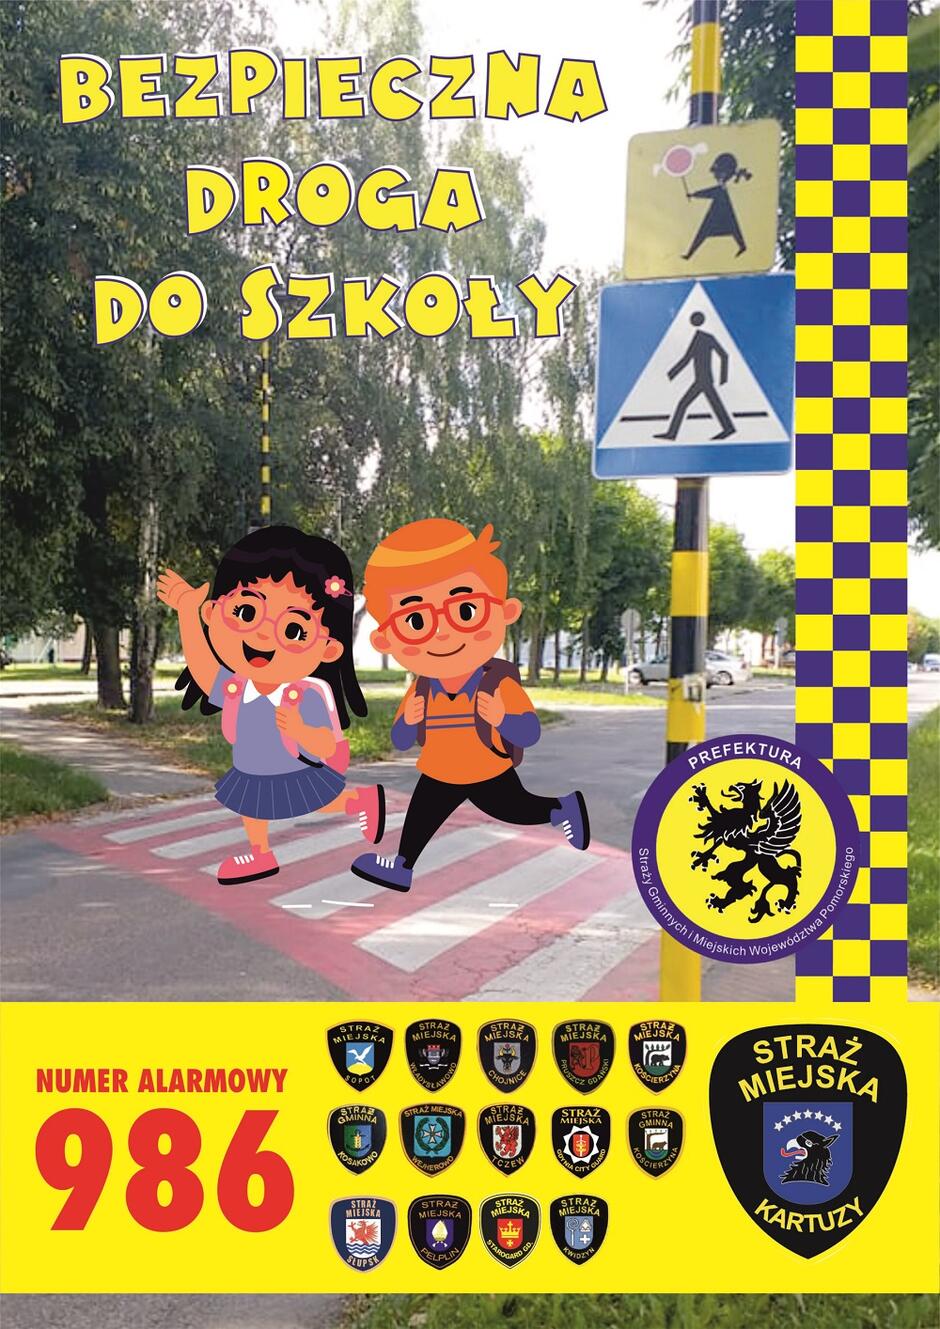 straz-miejska-plakat-bezpieczna-droga-do-szkoly-1-scaled